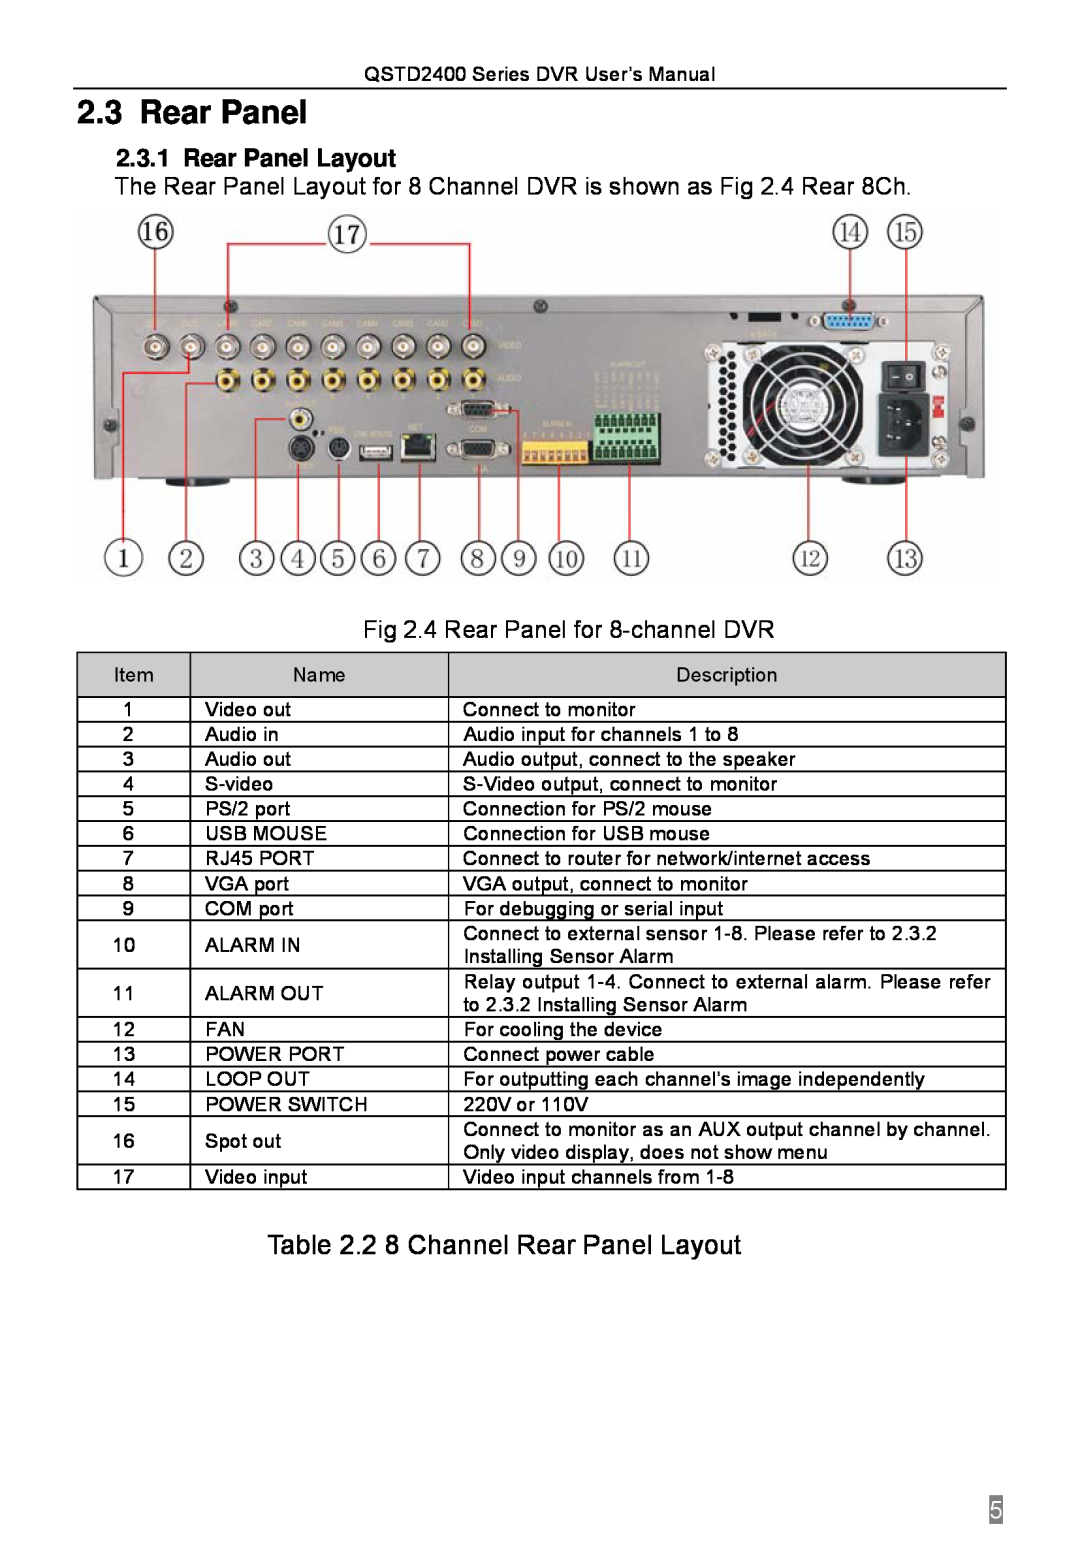 Q-See QSTD2416, QSTD2408, QSTD2404 user manual 2 8 Channel Rear Panel Layout 